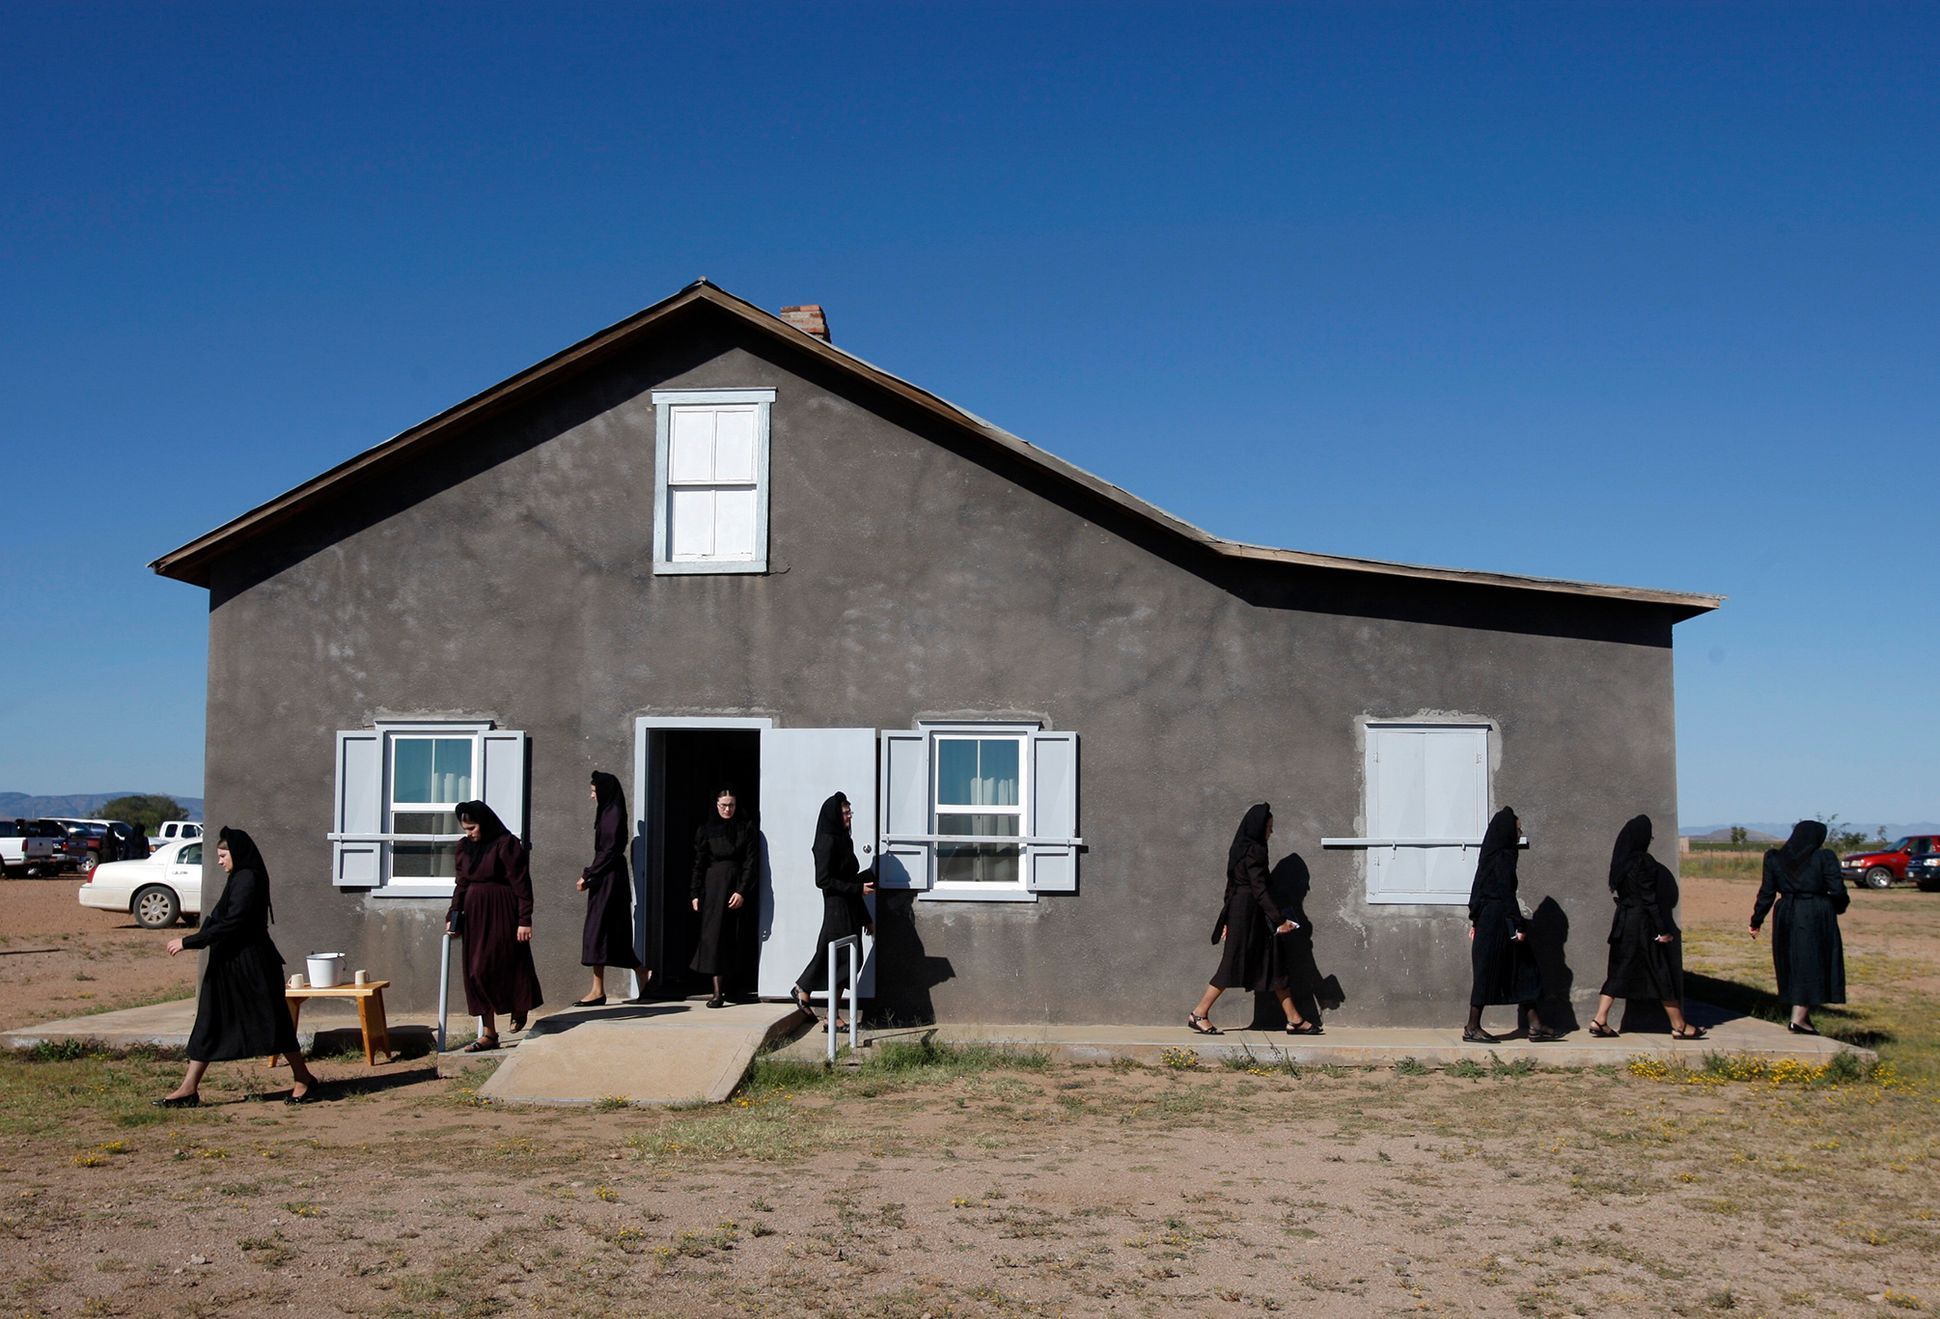 Jose Luis Gonzalez (Reuters): Mennonité v Mexiku, fotoreportáž, dokument